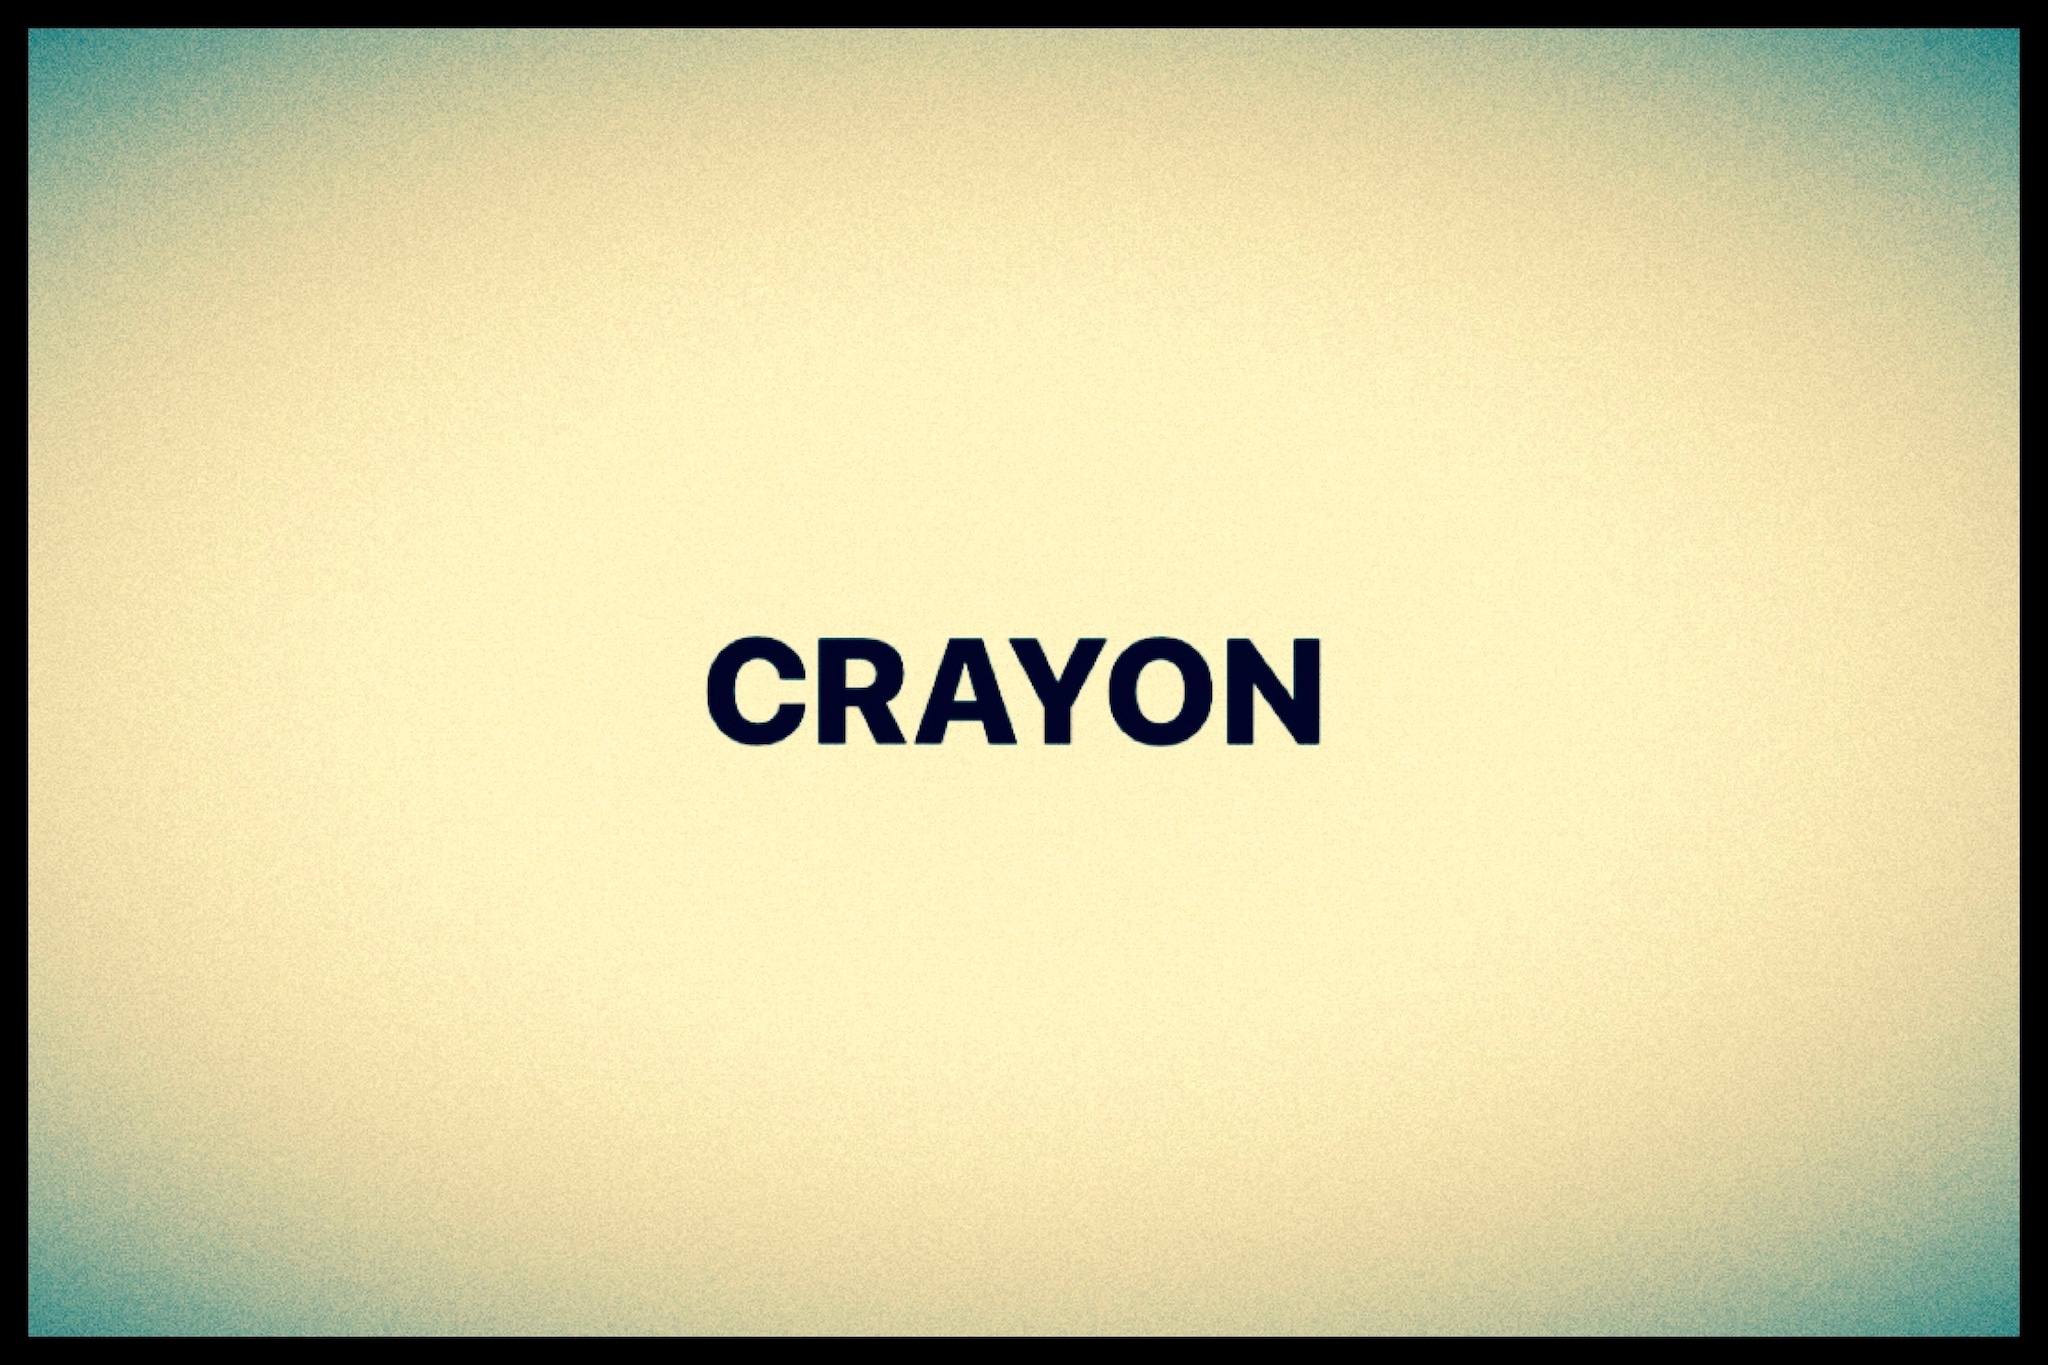 CRAYON